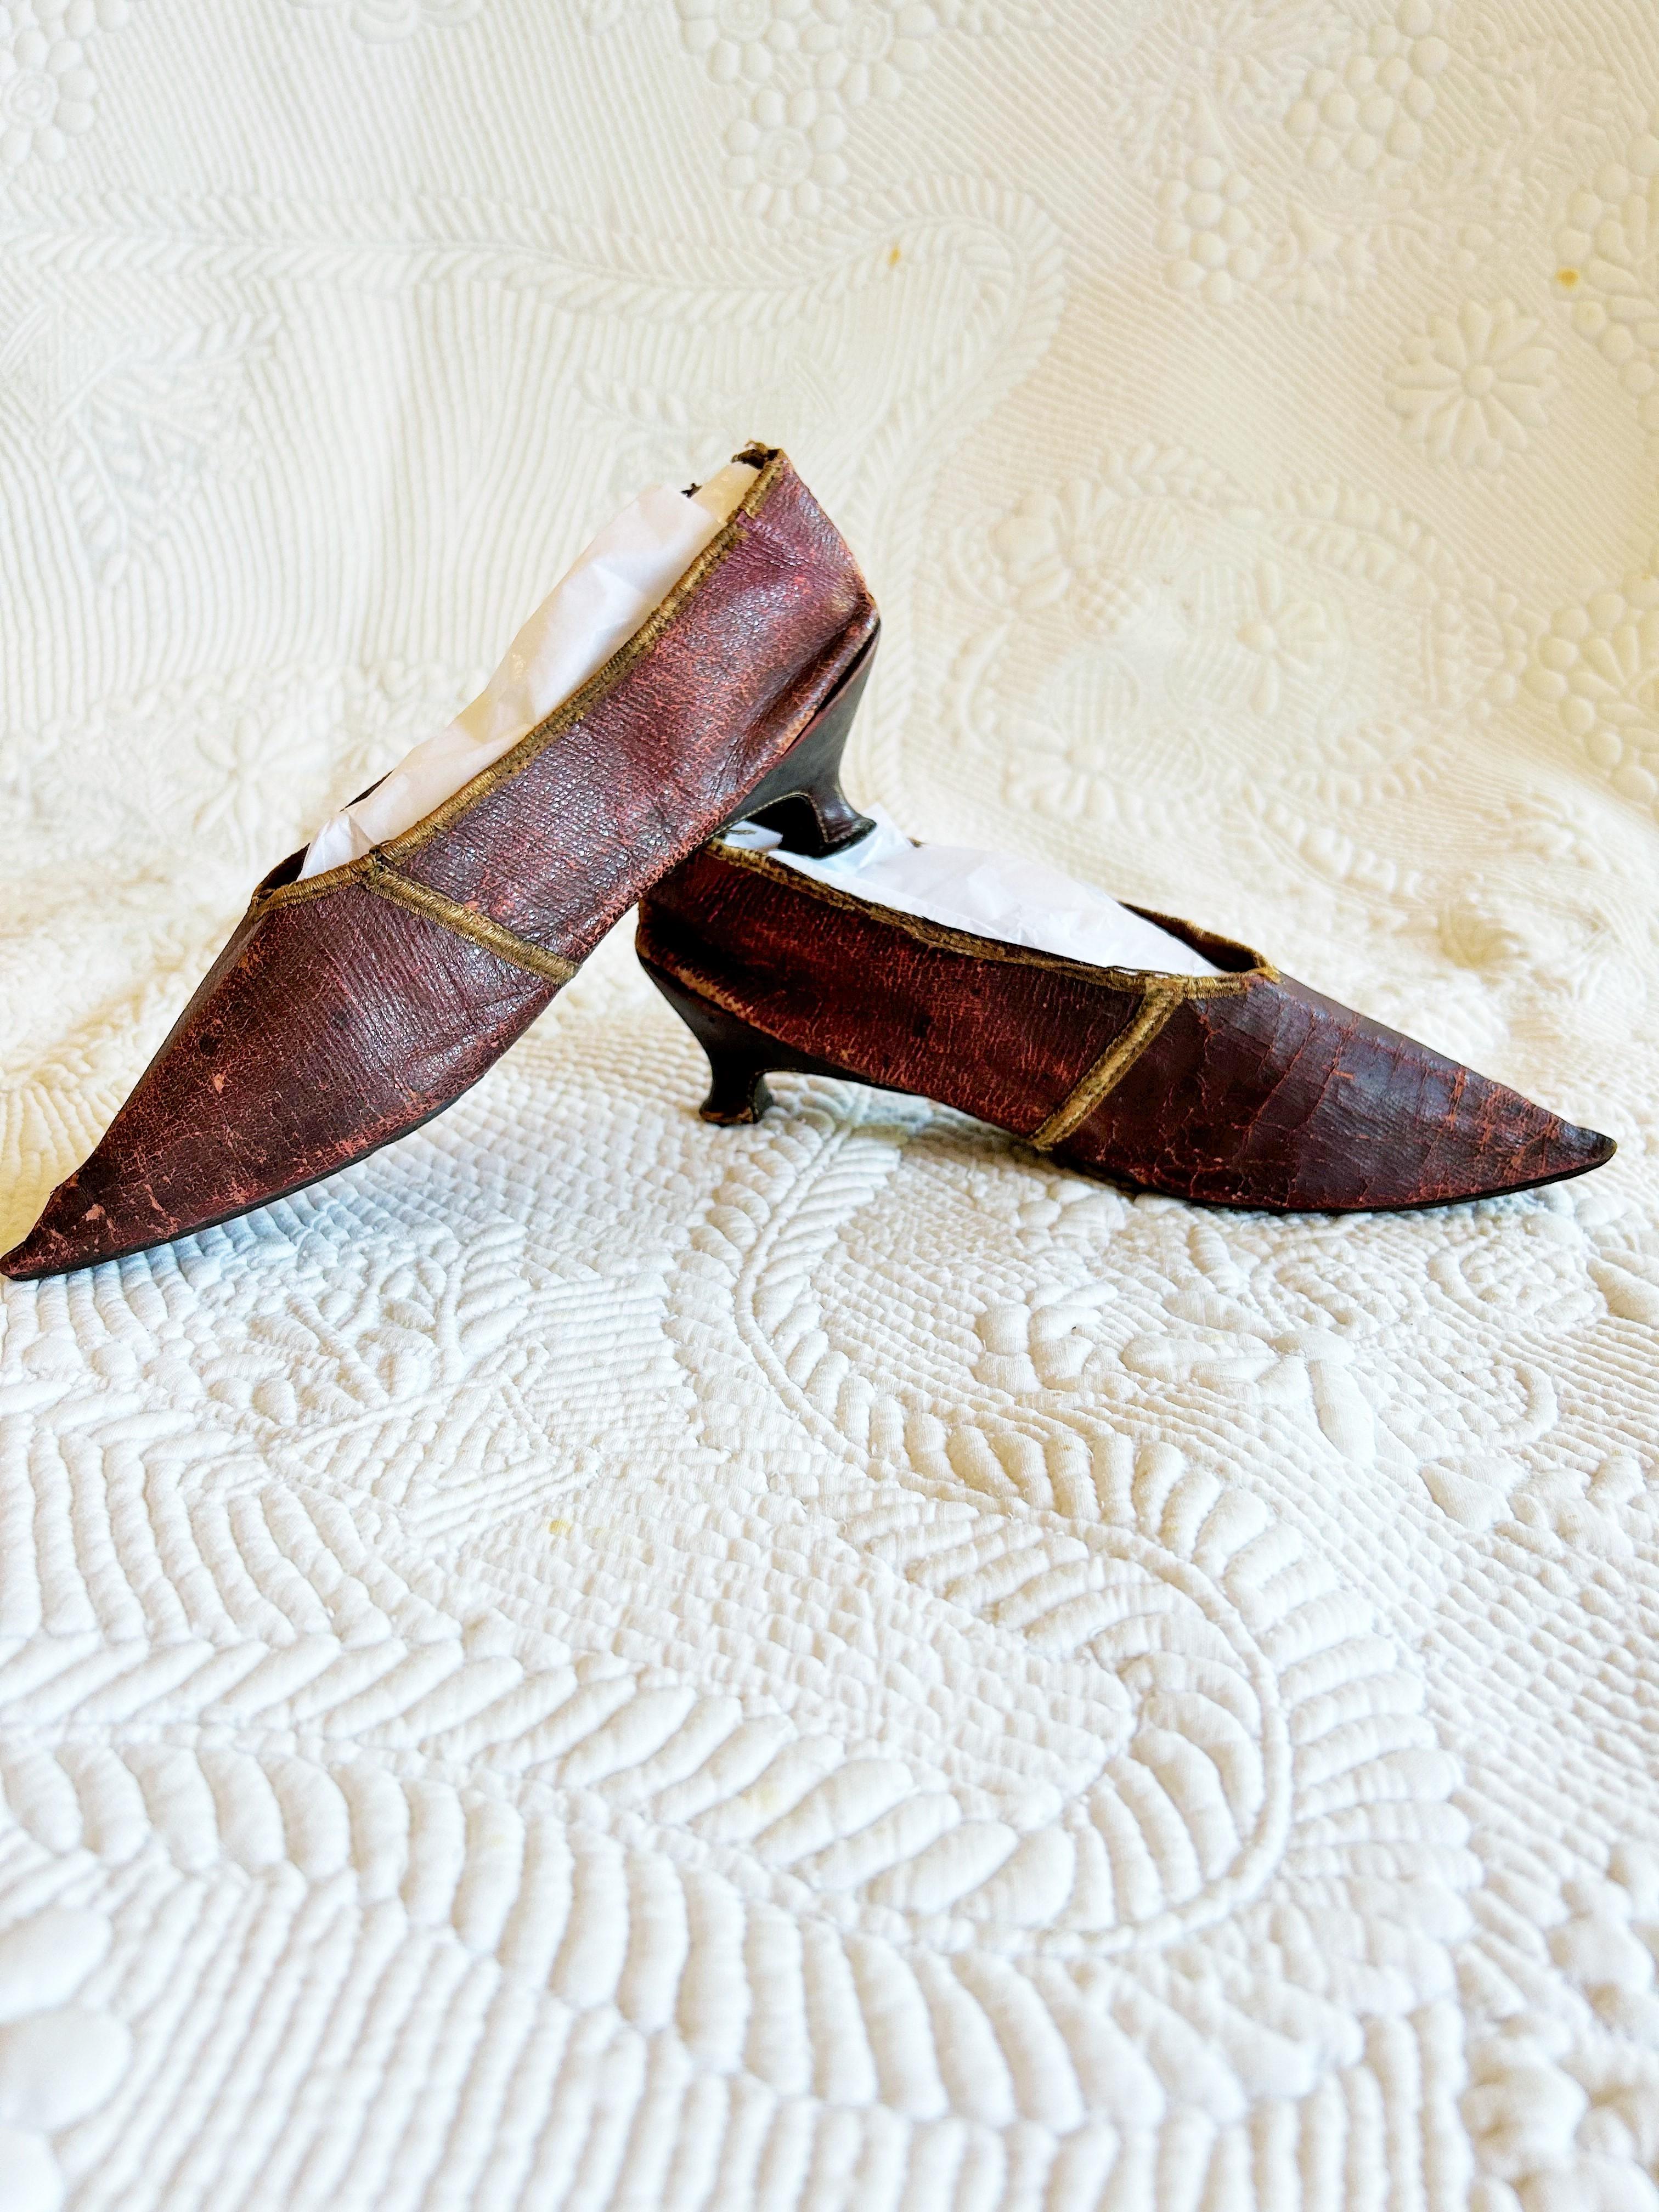 Vers 1790-1800
France ou Europe
Elegante paire de chaussures à talon aiguille en cuir bordeaux datant de la fin du 18e siècle. Empeigne à bout pointu et petit talon bobine, typiques de la mode de l'époque. Doublure en chintz marron clair avec cordon